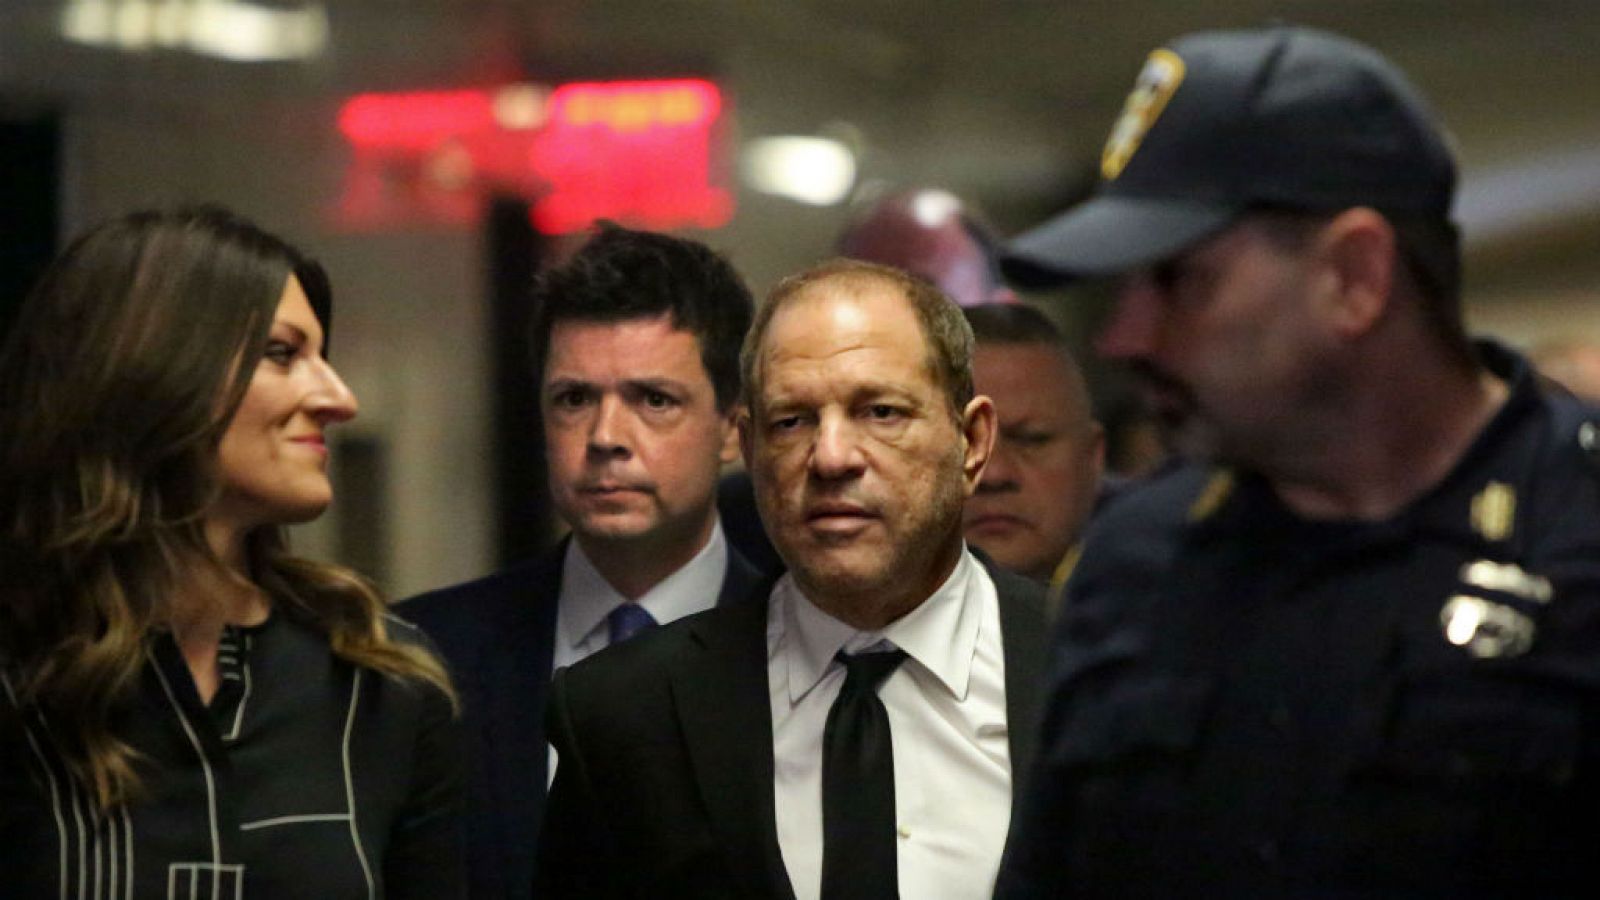 Boletines RNE - Weinstein se declara "no culpable" de nuevos cargos por abusos sexuales - Escuchar ahora